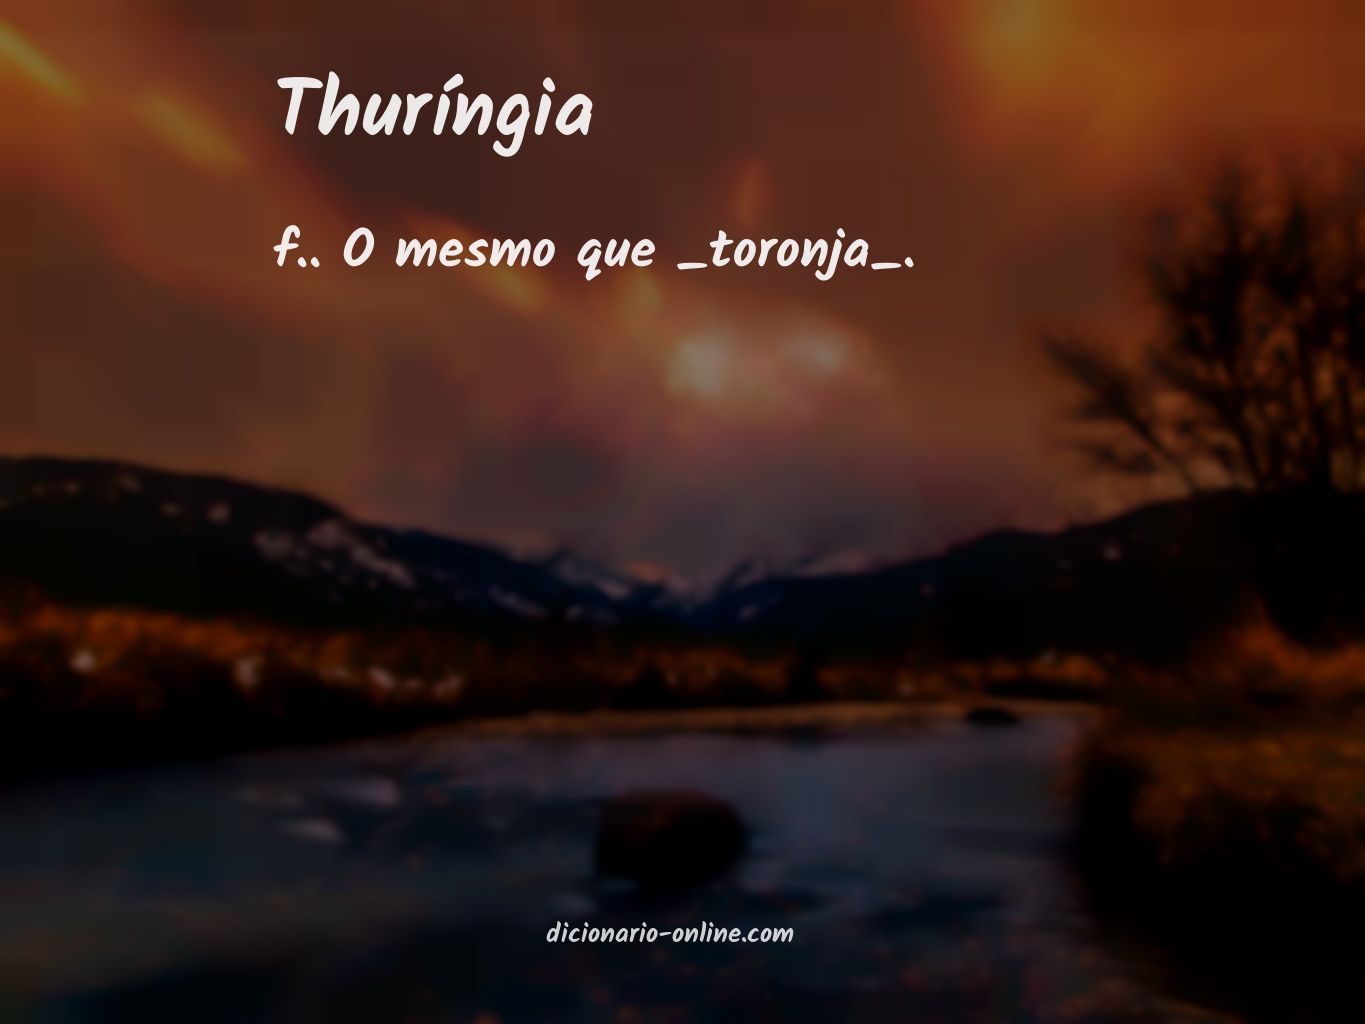 Significado de thuríngia